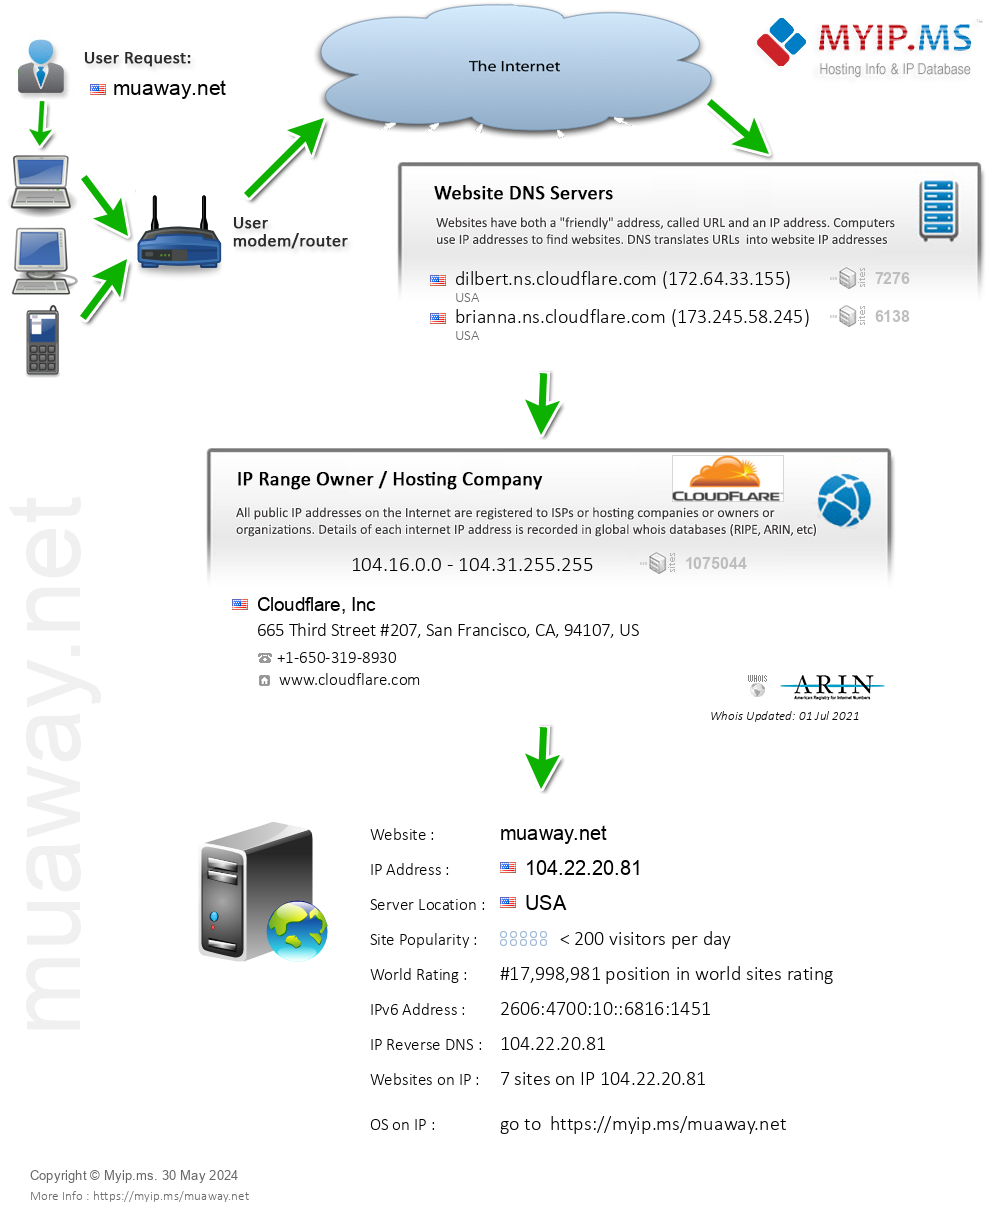 Muaway.net - Website Hosting Visual IP Diagram